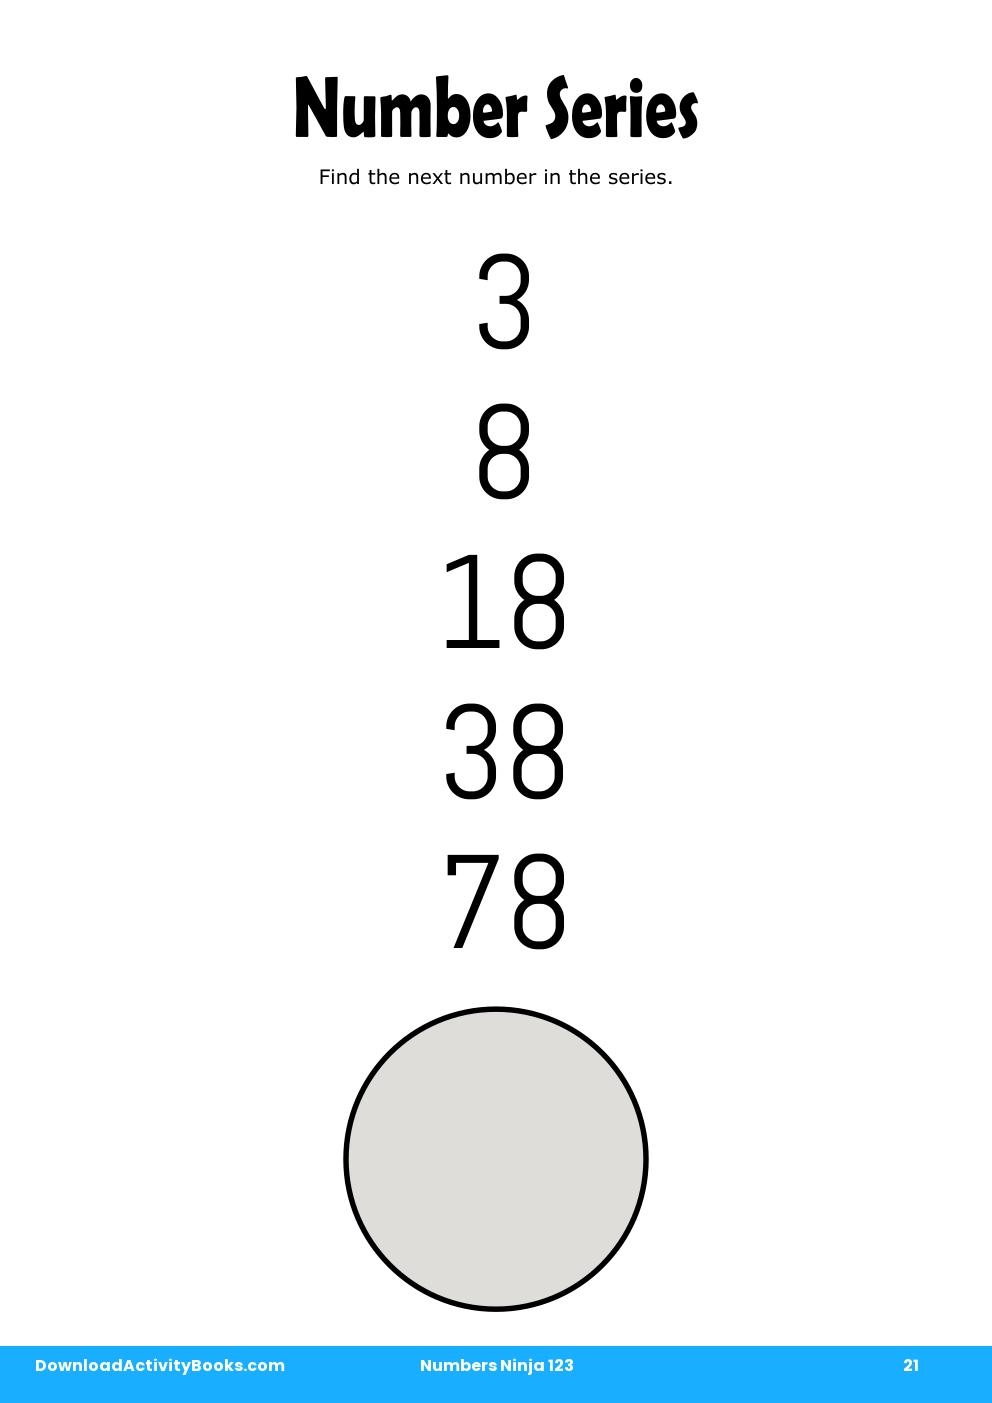 Number Series in Numbers Ninja 123